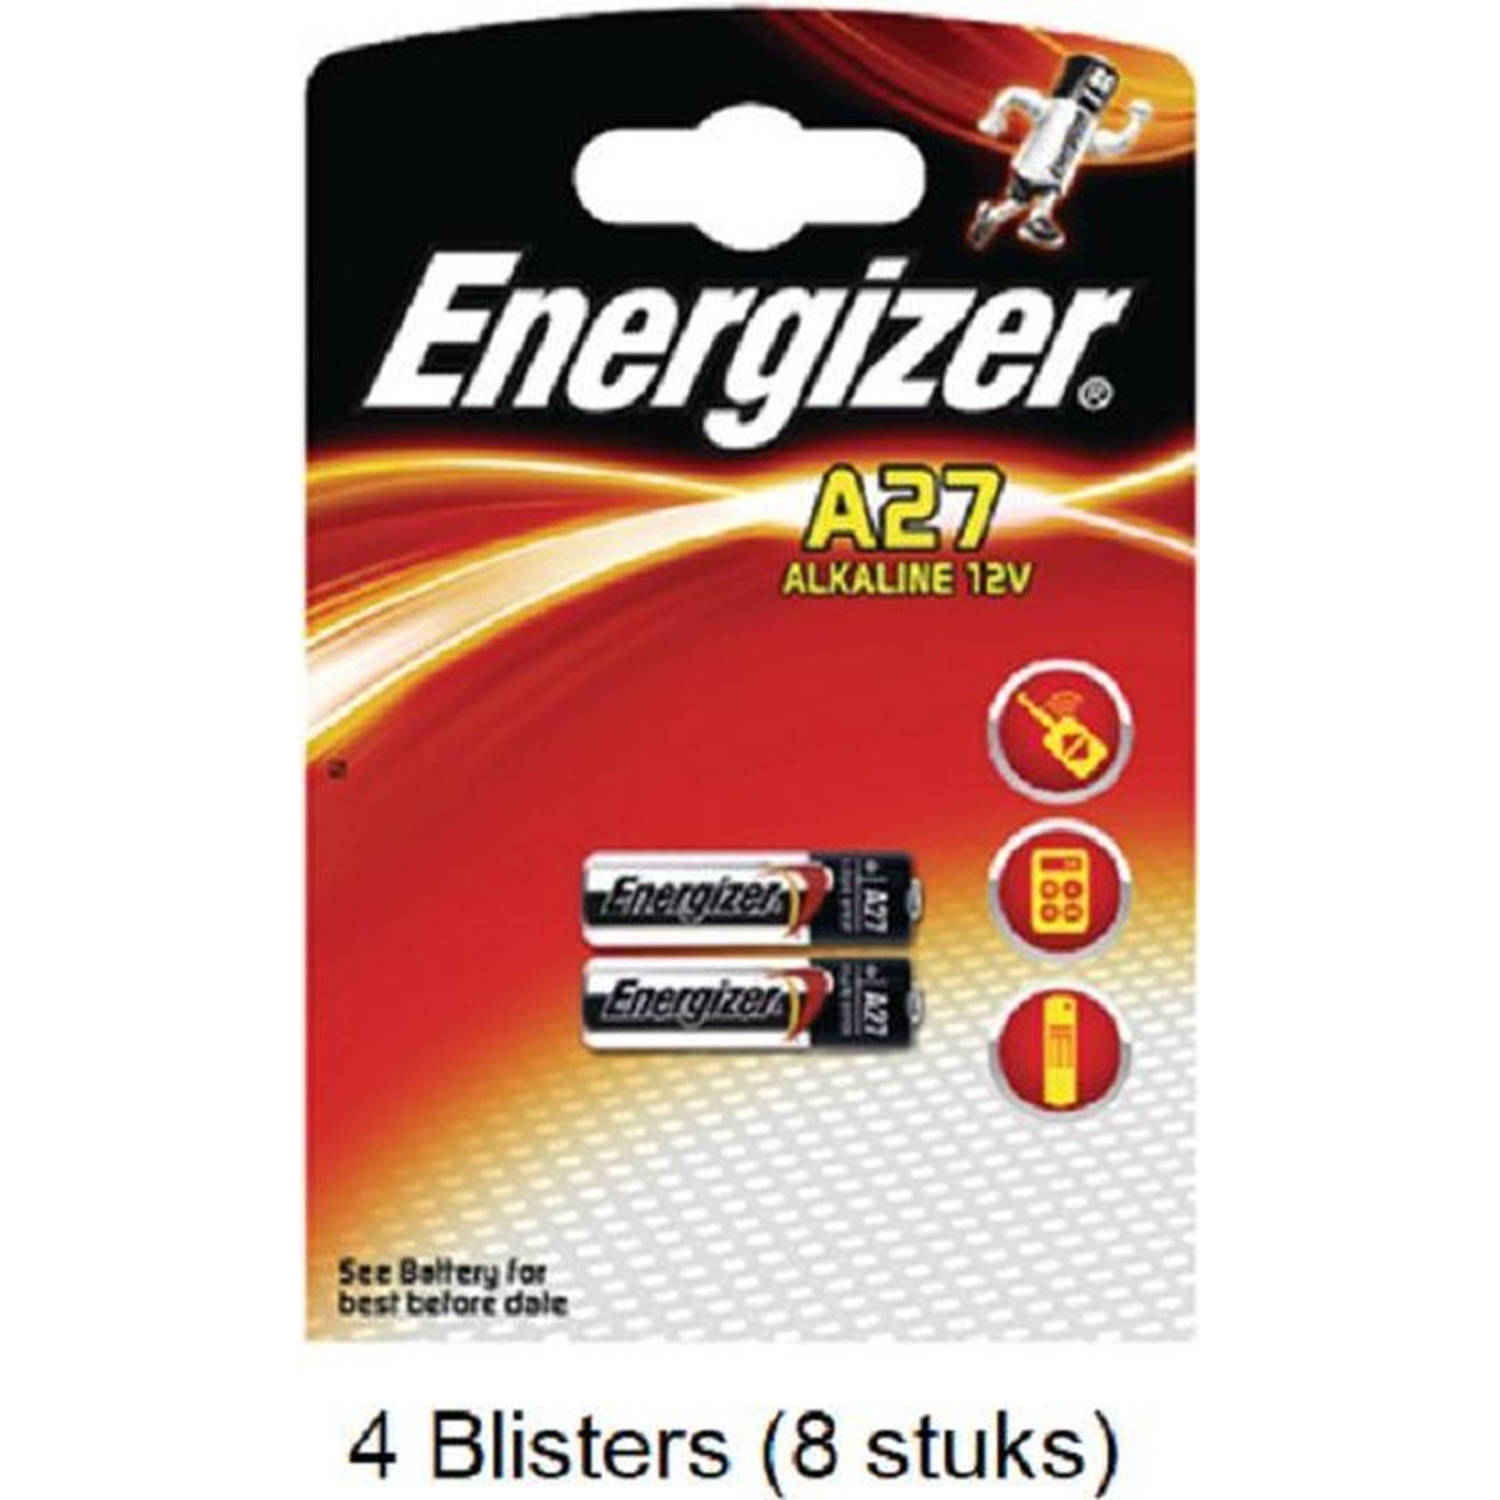 8 Stuks (4 Blisters A 2 Stuks) Energizer Alkaline Lr27-A27 12v